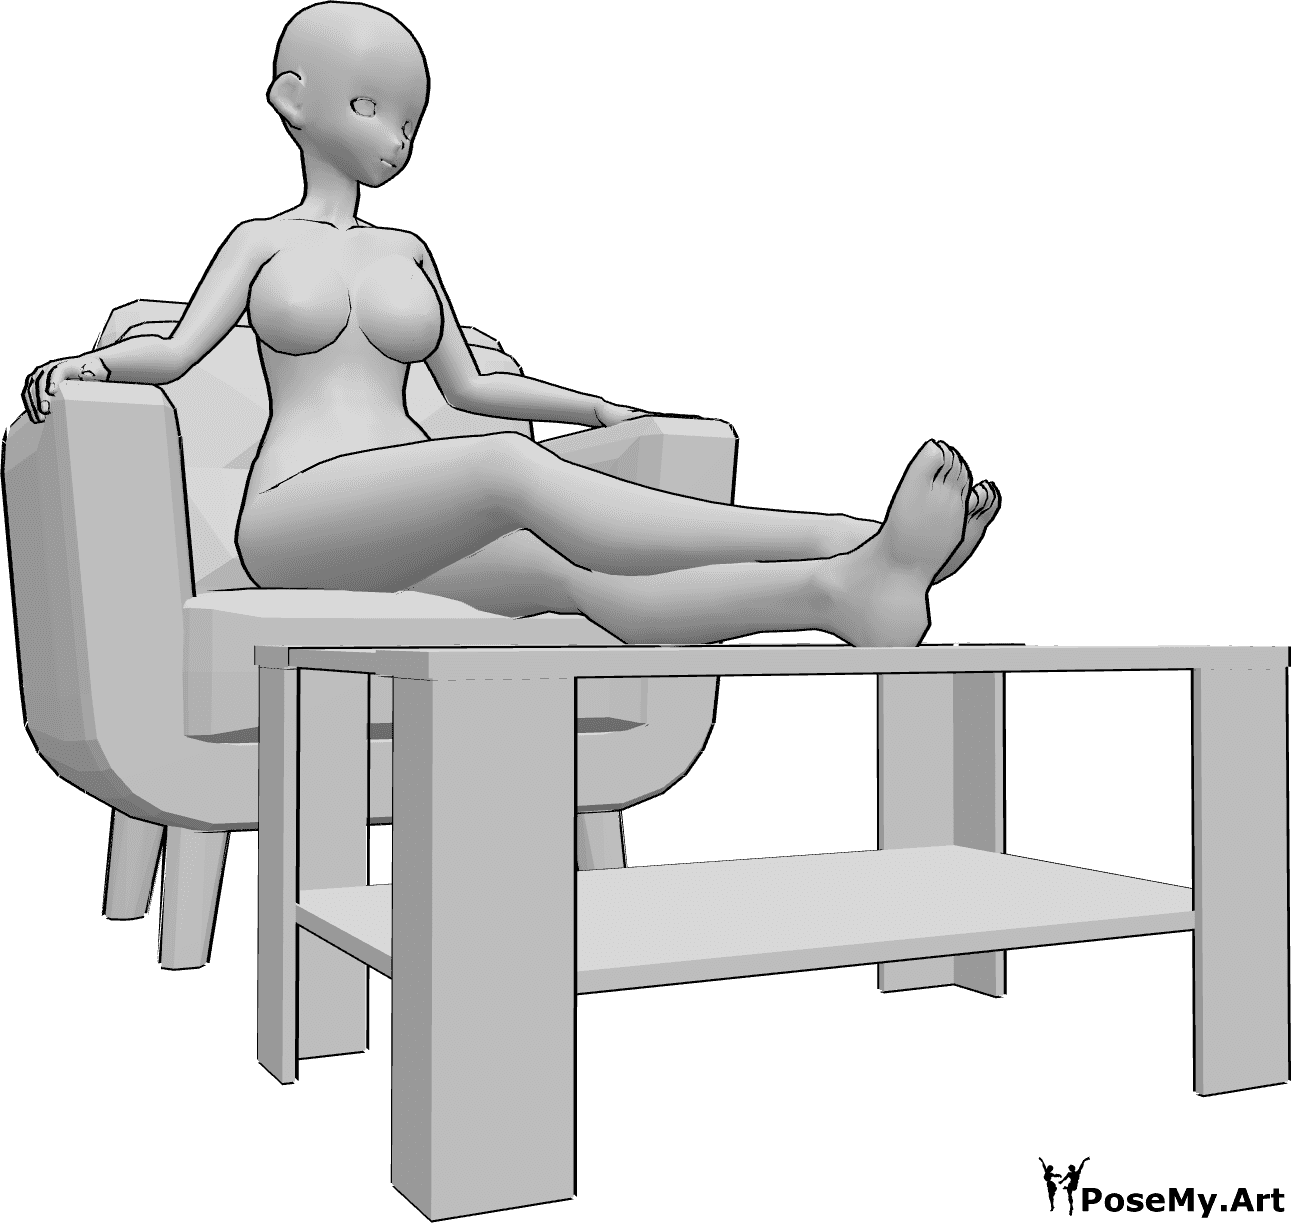 Referência de poses- Pose das pernas em repouso de anime - A mulher anime está sentada no cadeirão e apoia as pernas numa pequena mesa